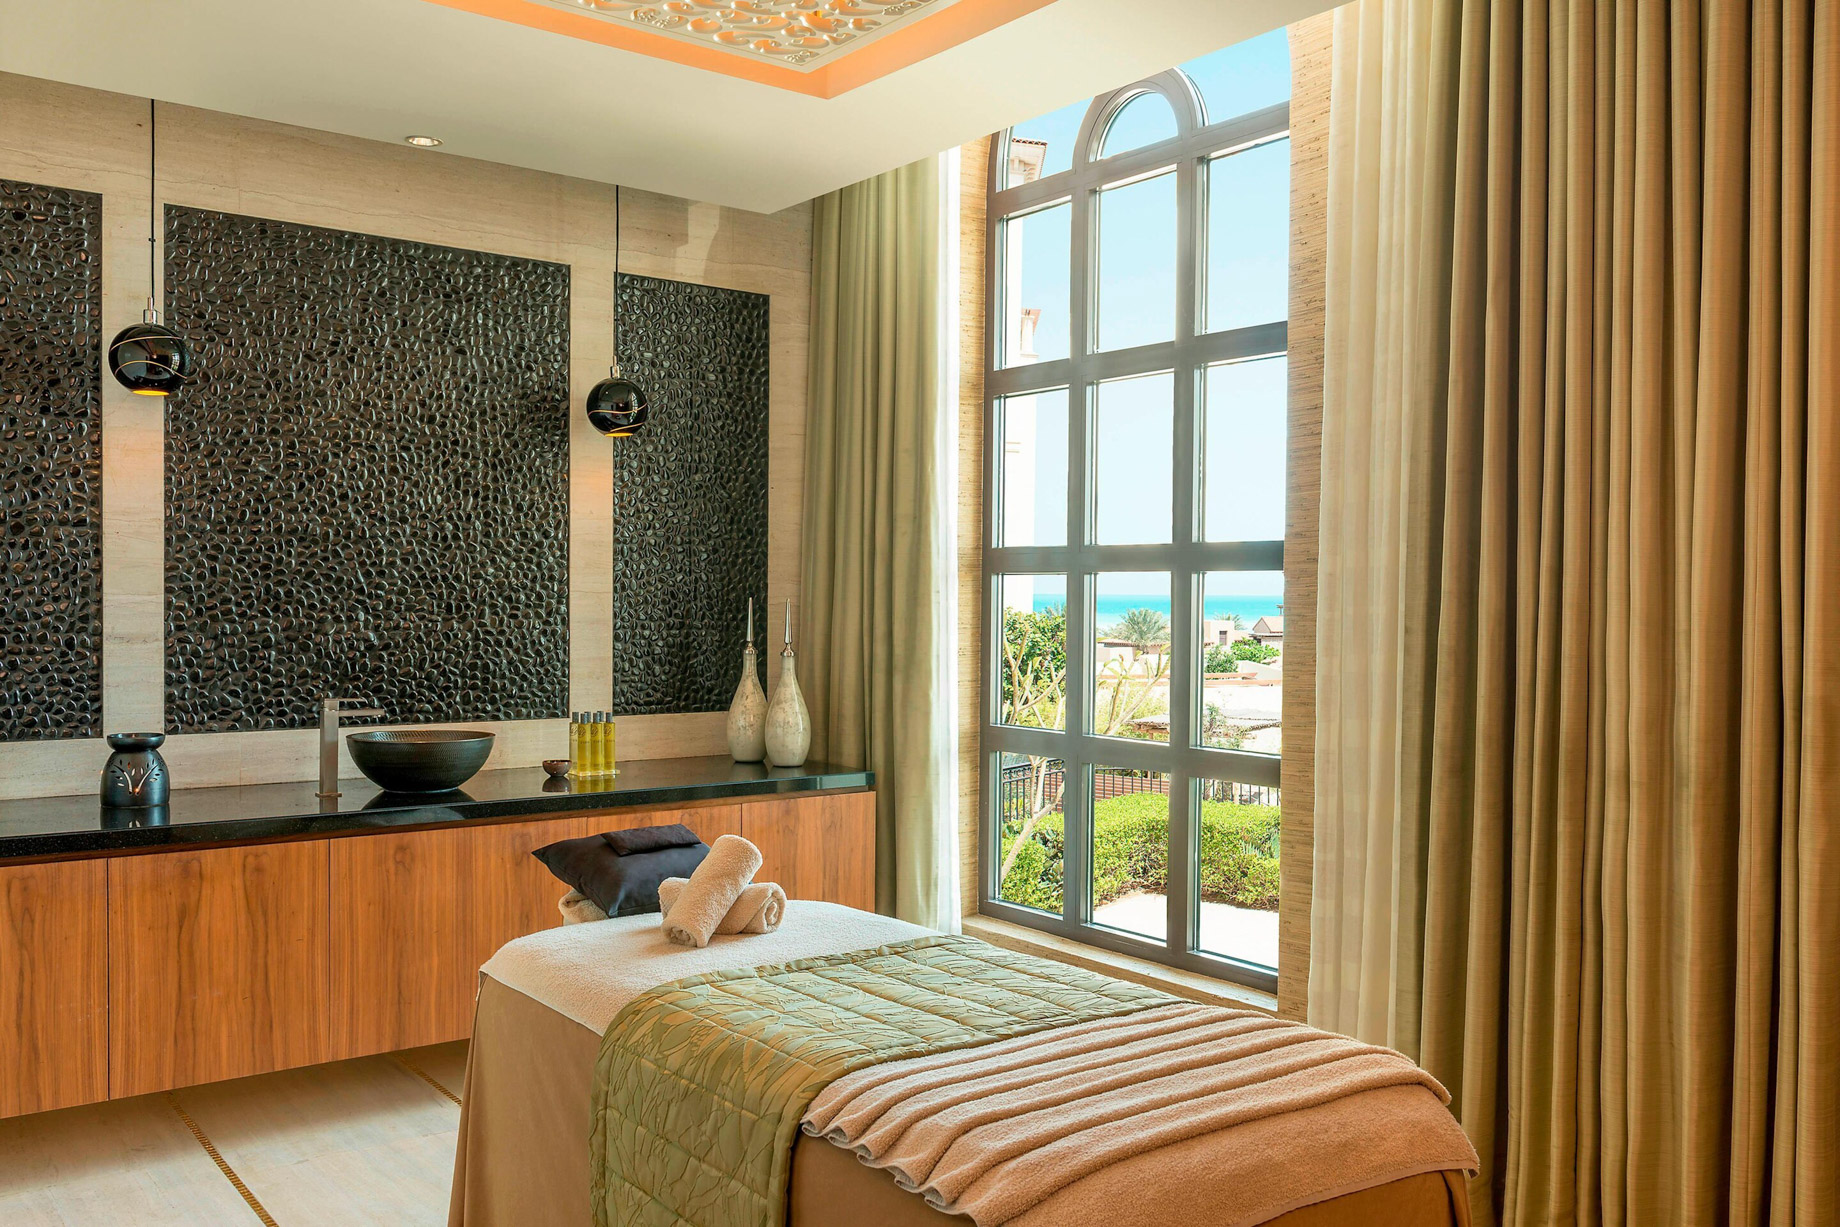 The St. Regis Saadiyat Island Resort – Abu Dhabi, UAE – Iridium Spa Treatment Room